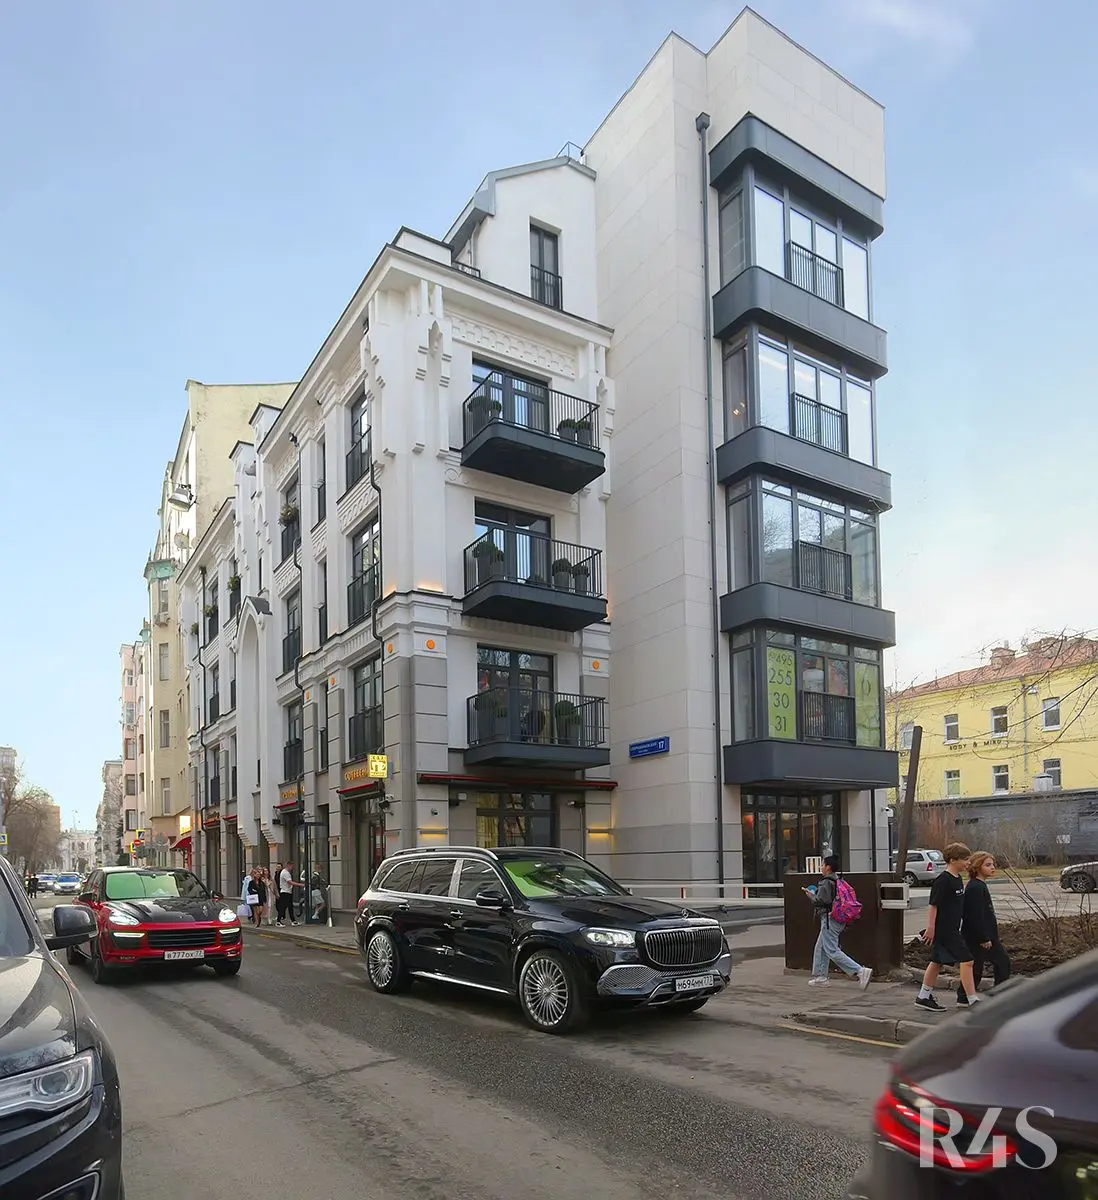 Продажа готового арендного бизнеса площадью 281.3 м2 в Москве: Спиридоньевский переулок, 17 R4S | Realty4Sale